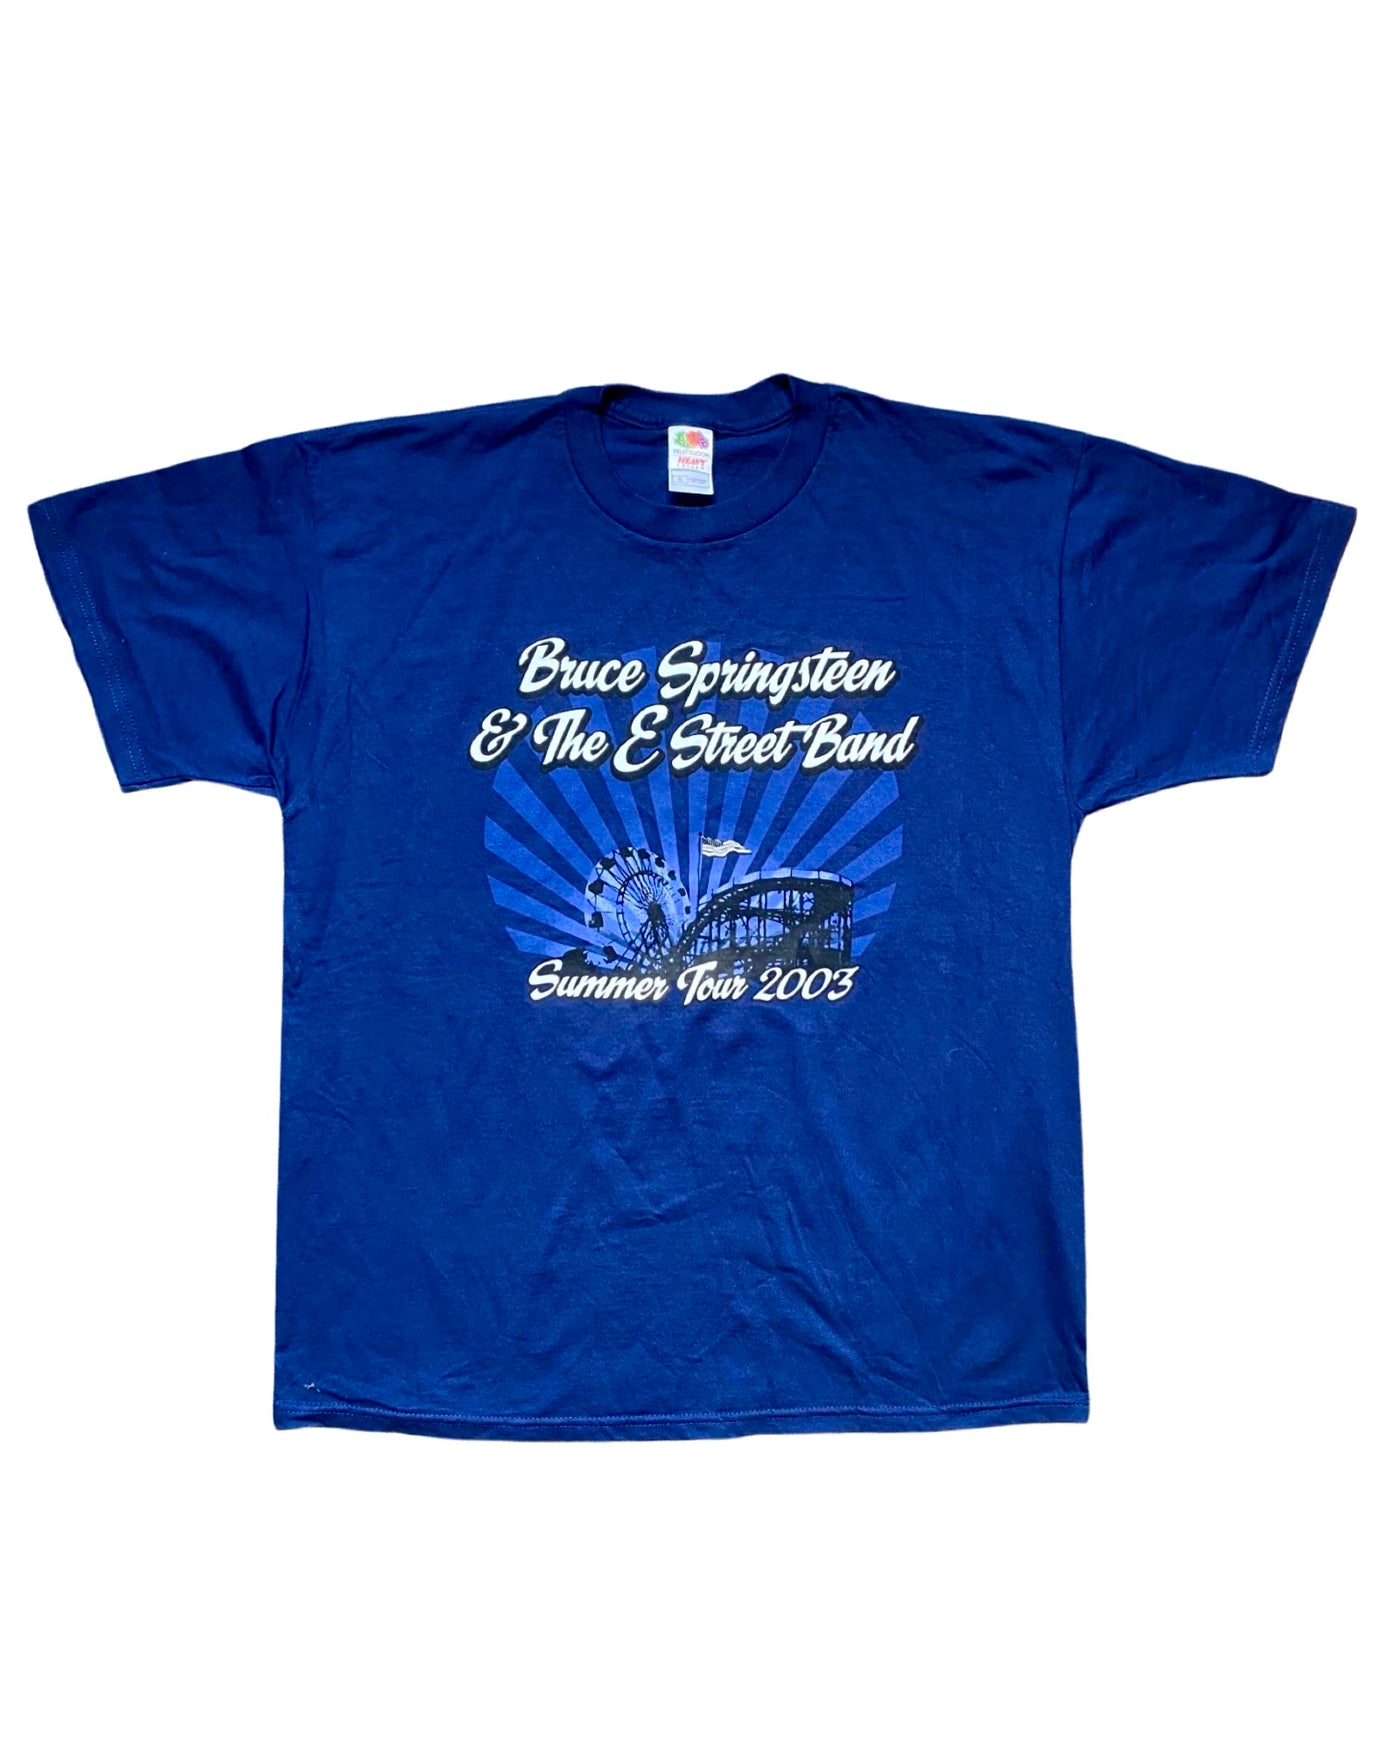 2003 Bruce Springsteen Tour T-Shirt